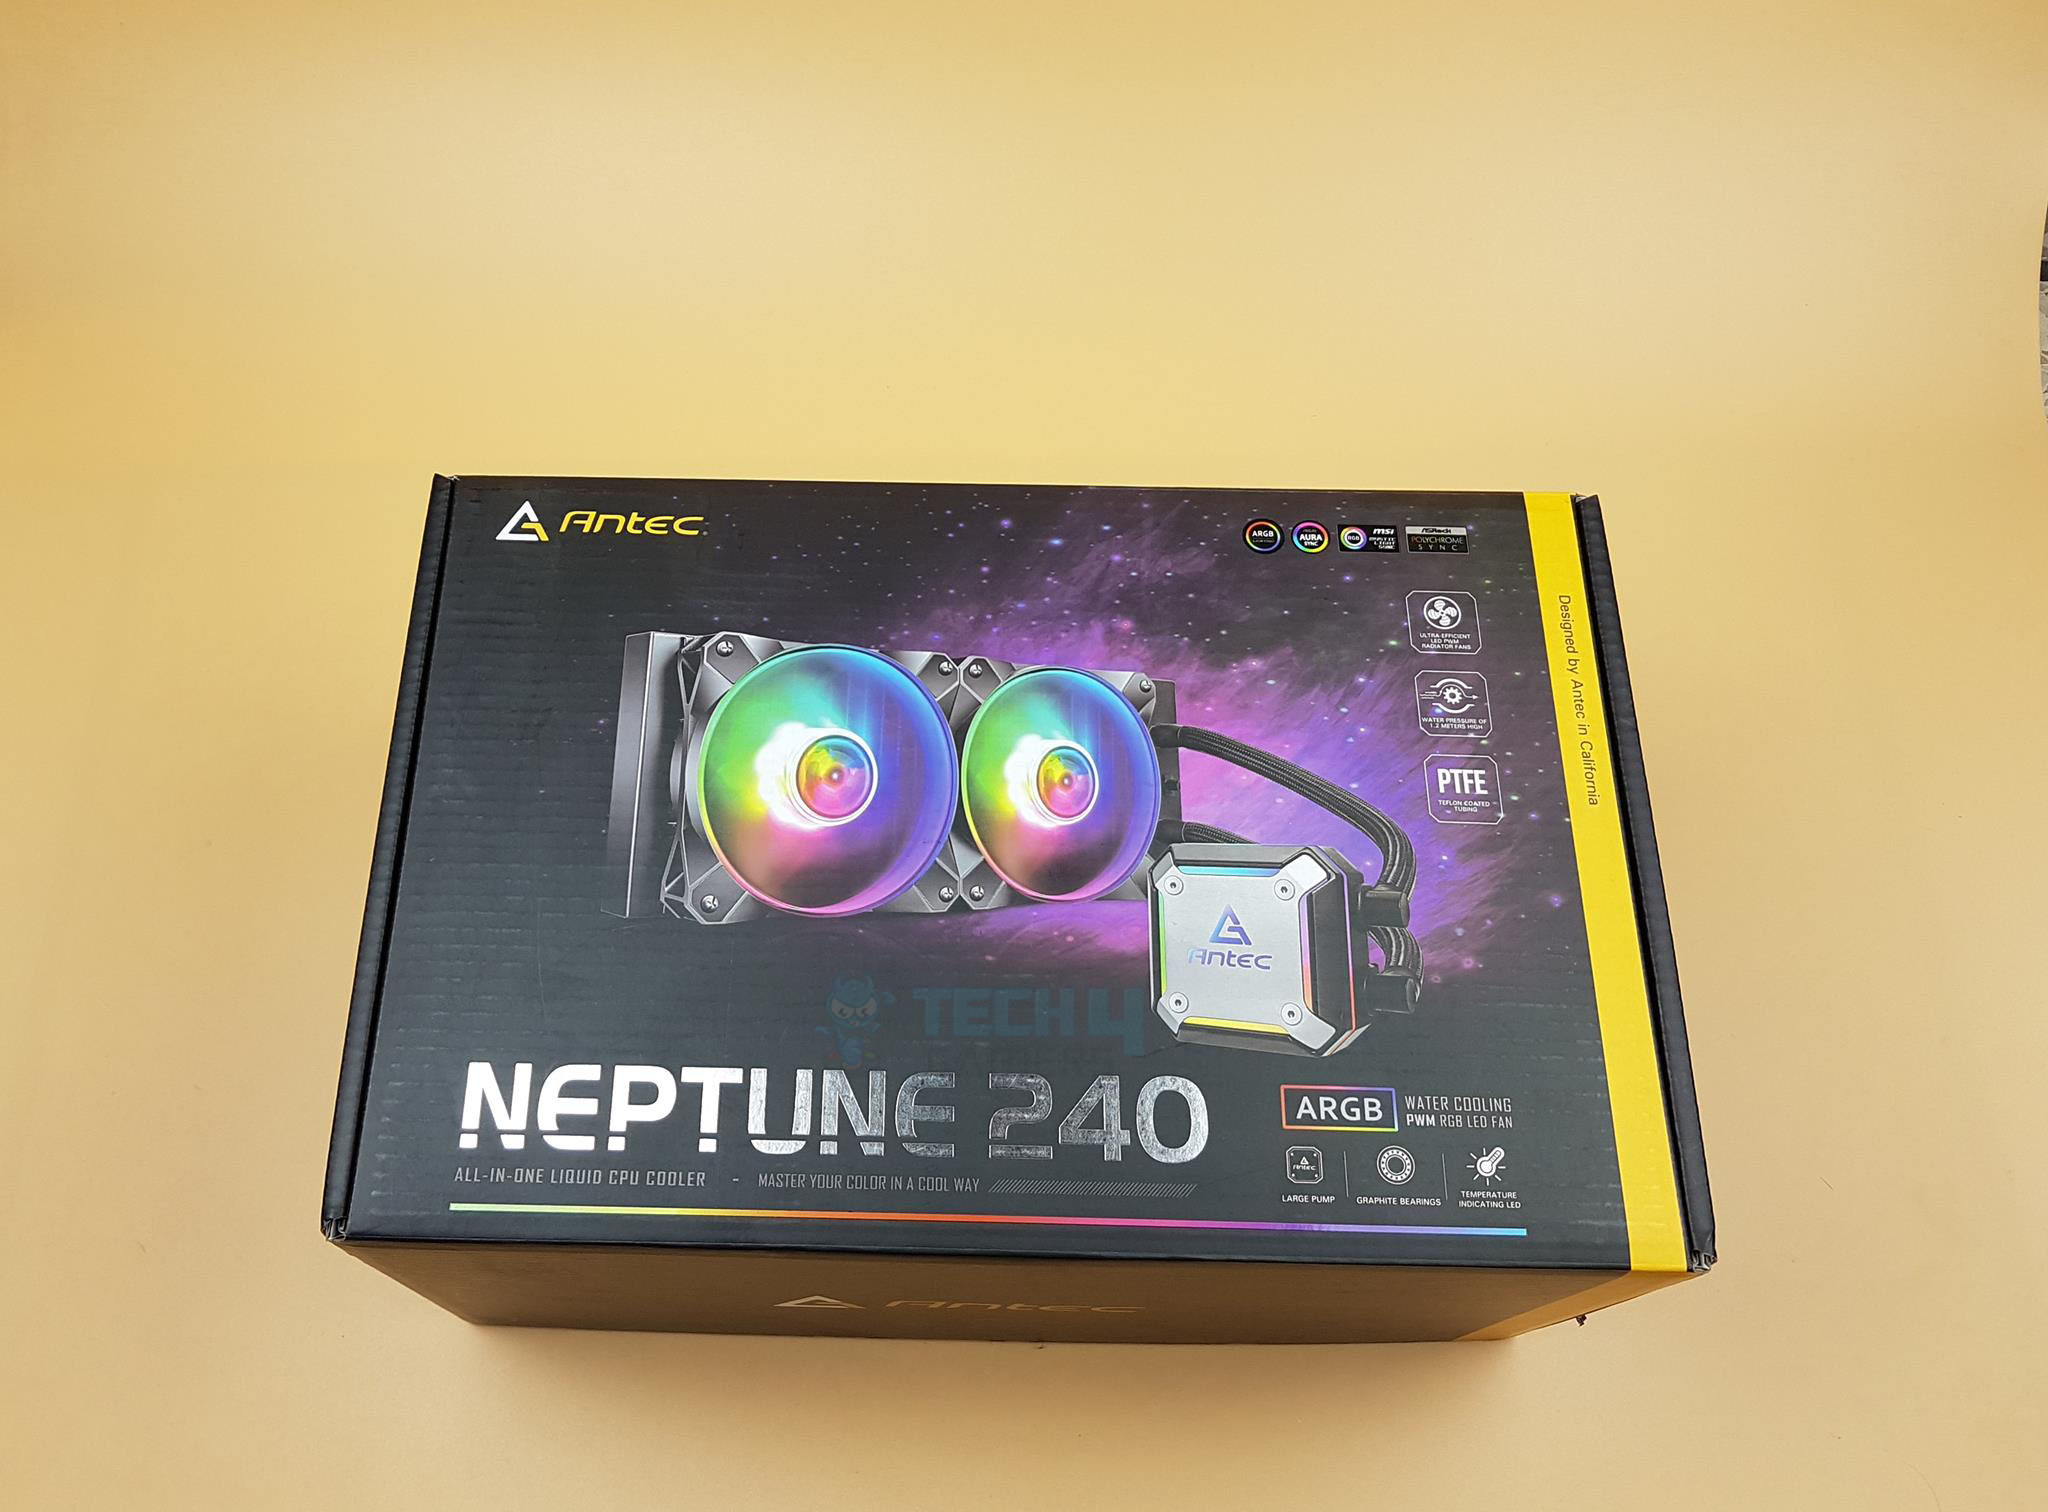 Neptune 240 ARGB Packaging